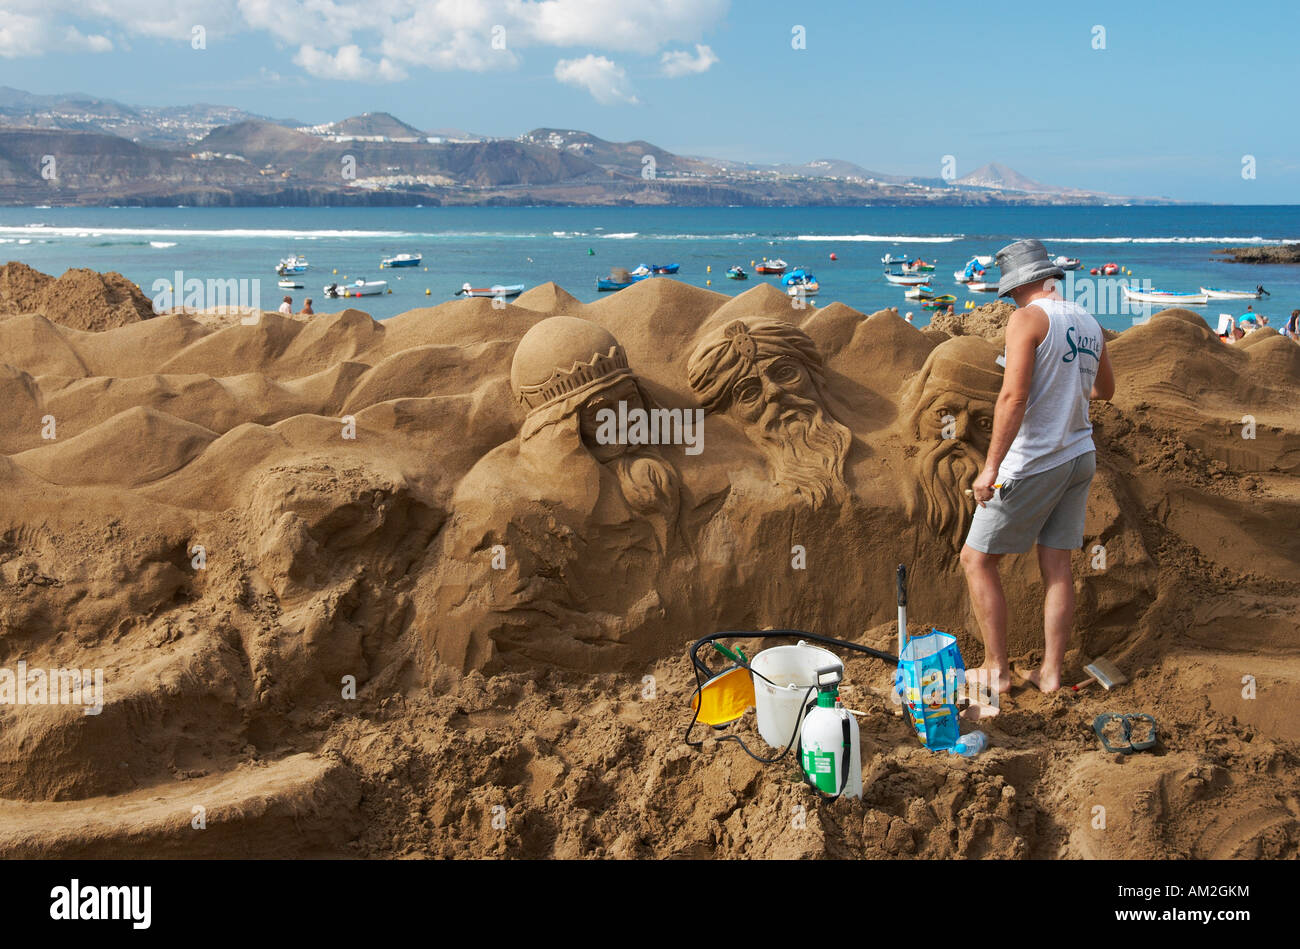 Scultore di sabbia lavorando sulla scena della natività, spiaggia Las Canteras, Gran Canaria, Isole canarie, Spagna, Europa Foto Stock